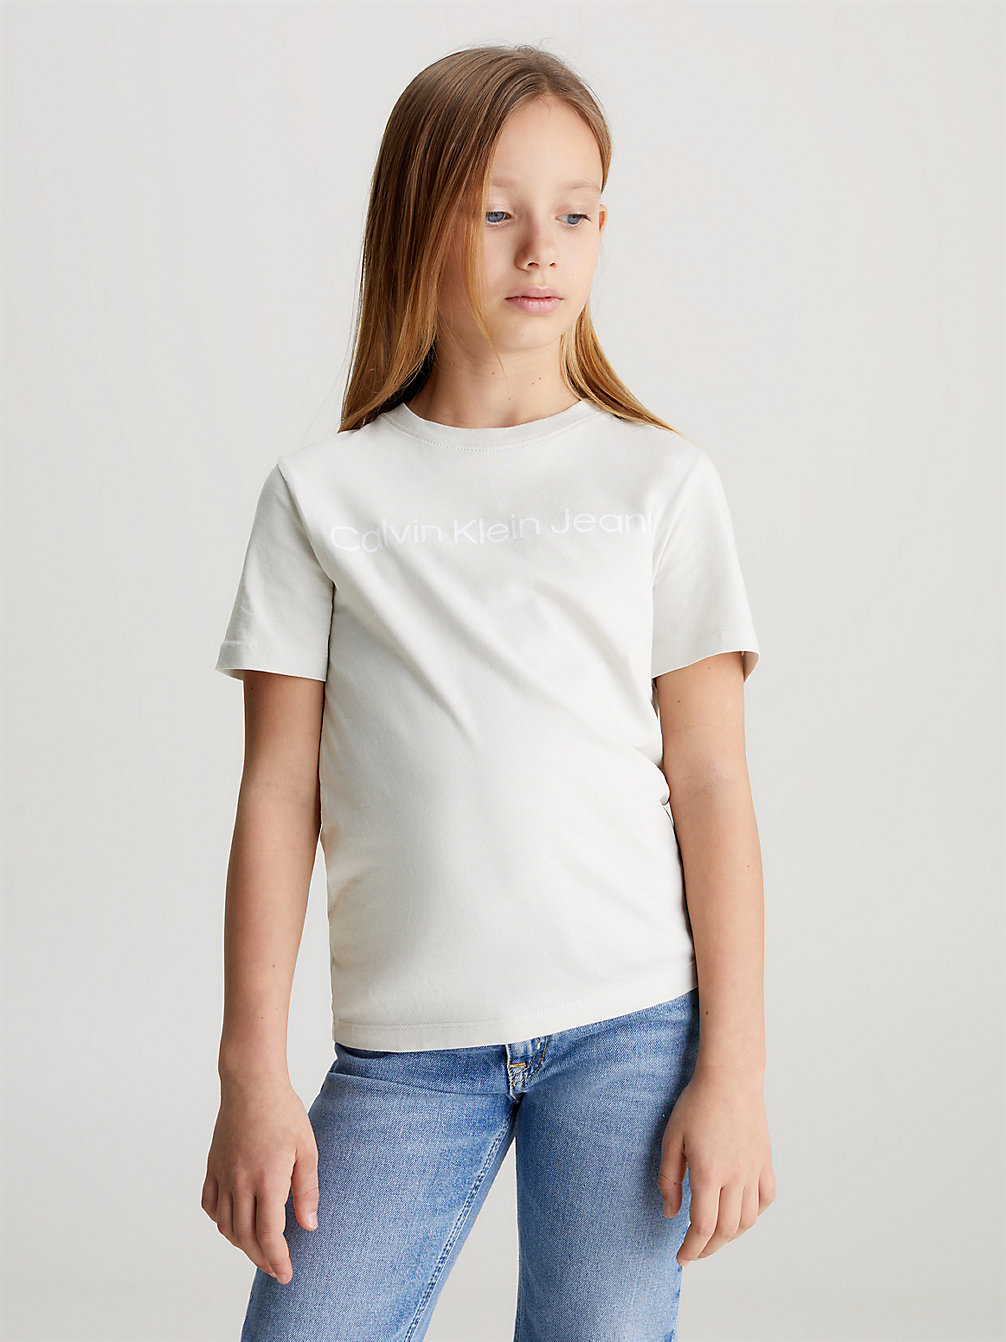 LUNAR ROCK Logo-T-Shirt Für Kinder undefined Unisex Kinder Calvin Klein